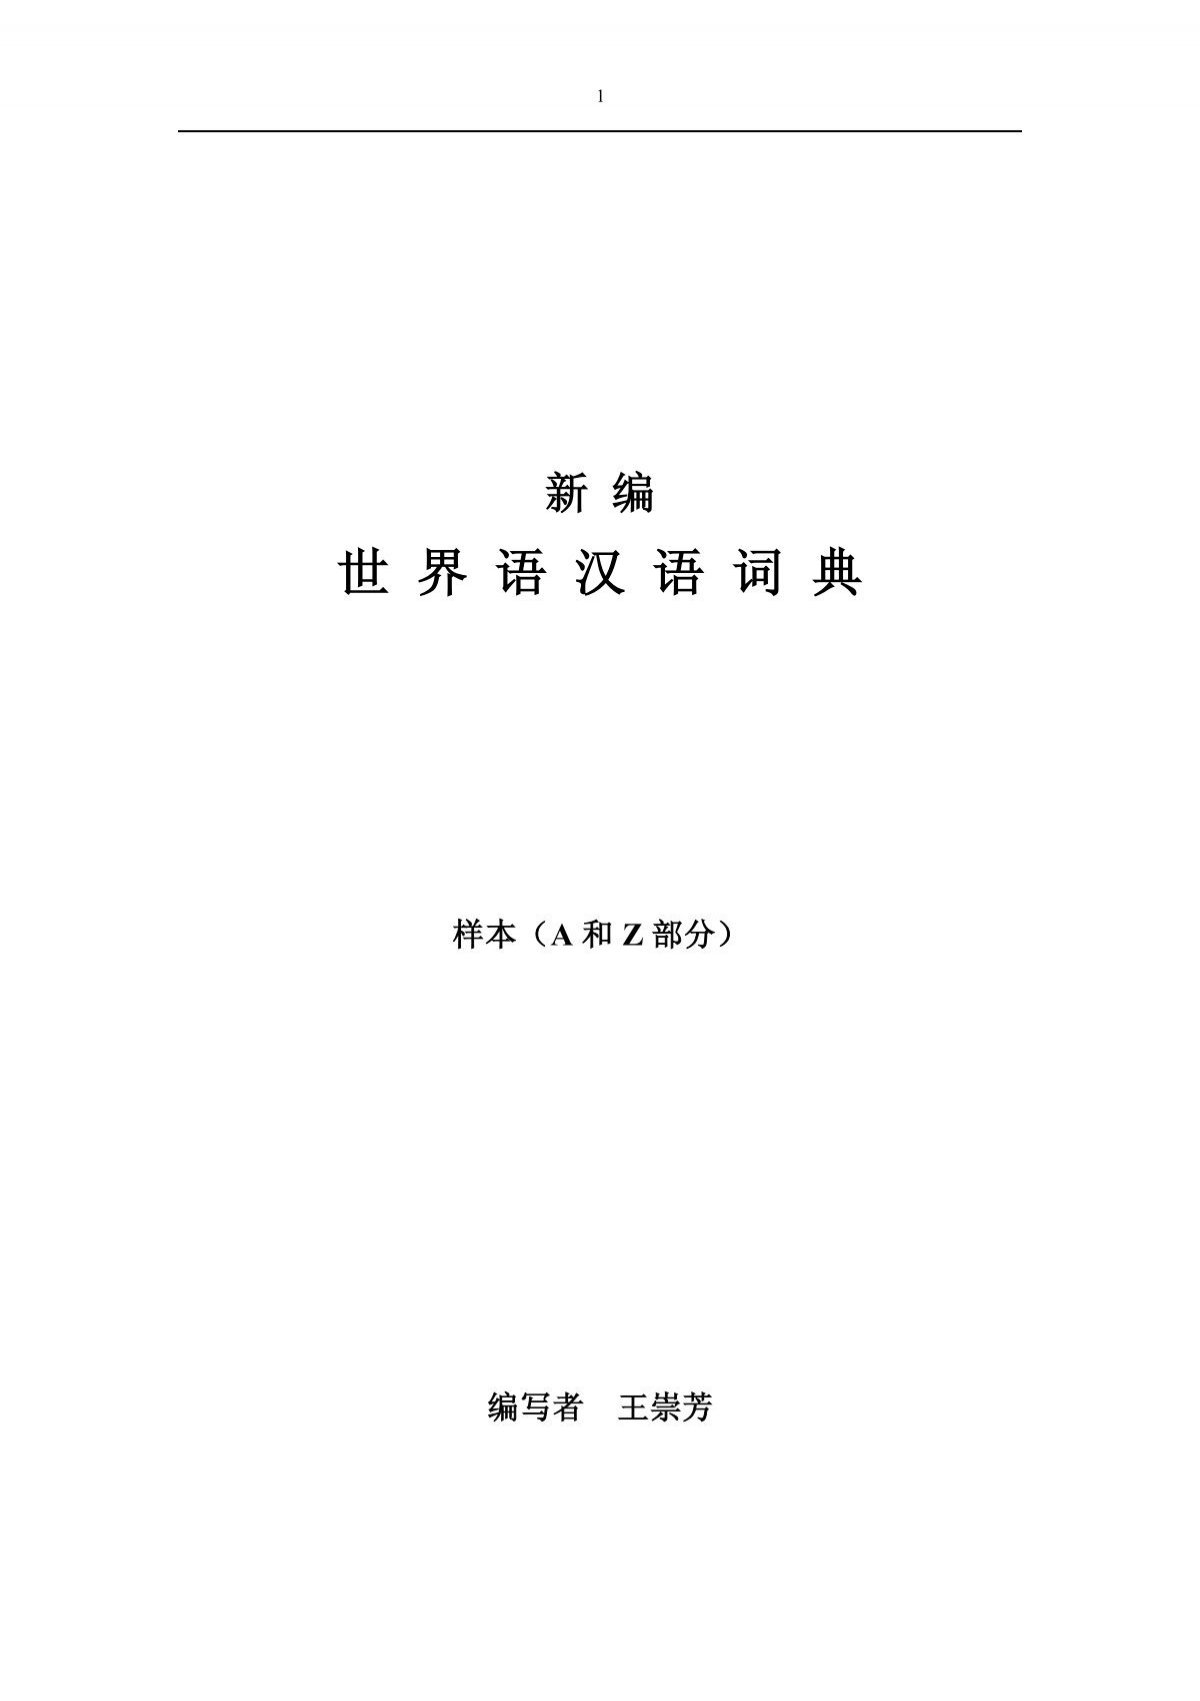 新编世界语汉语词典 样本 A和z 王崇芳 世界语学习